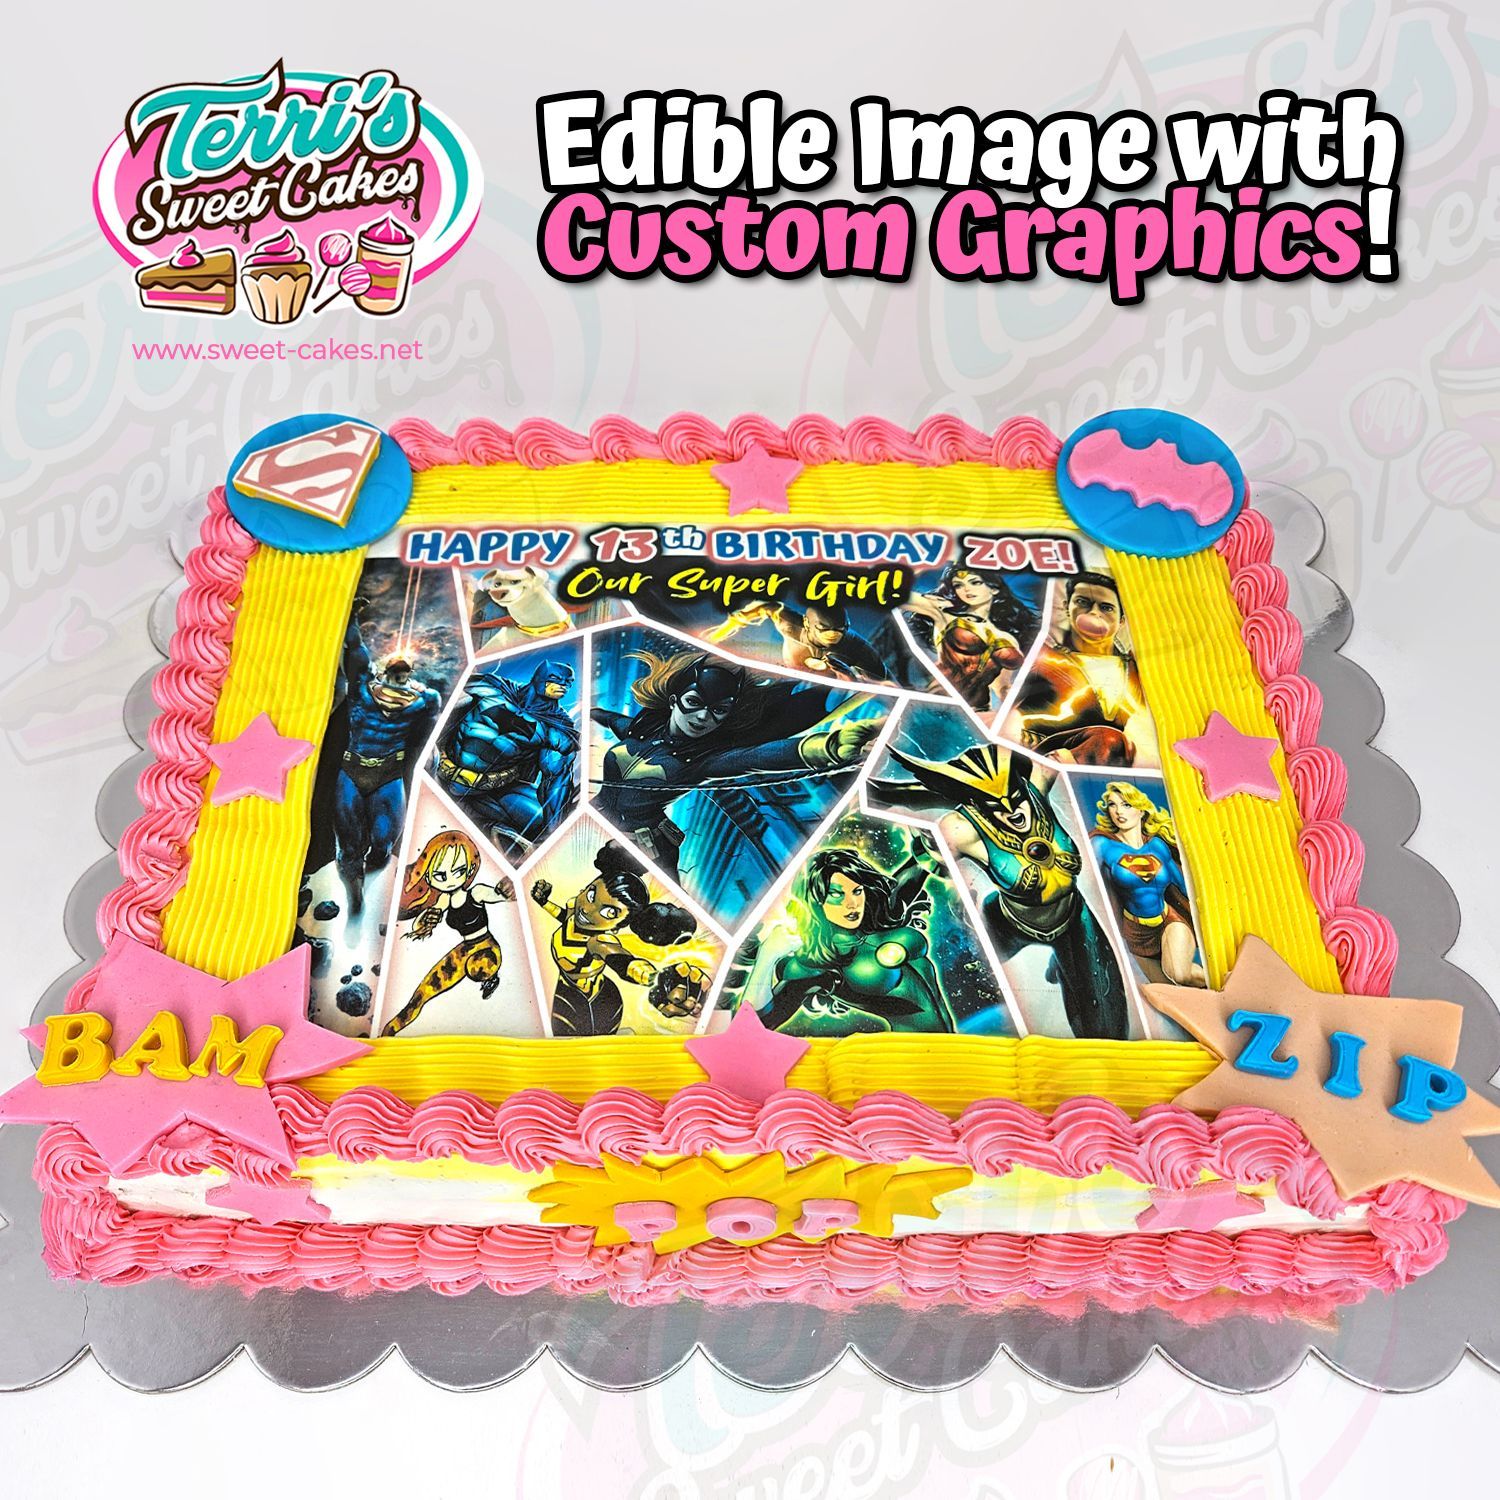 Superhero Custom Graphic Birthday Cake by Terri's Sweet Cakes